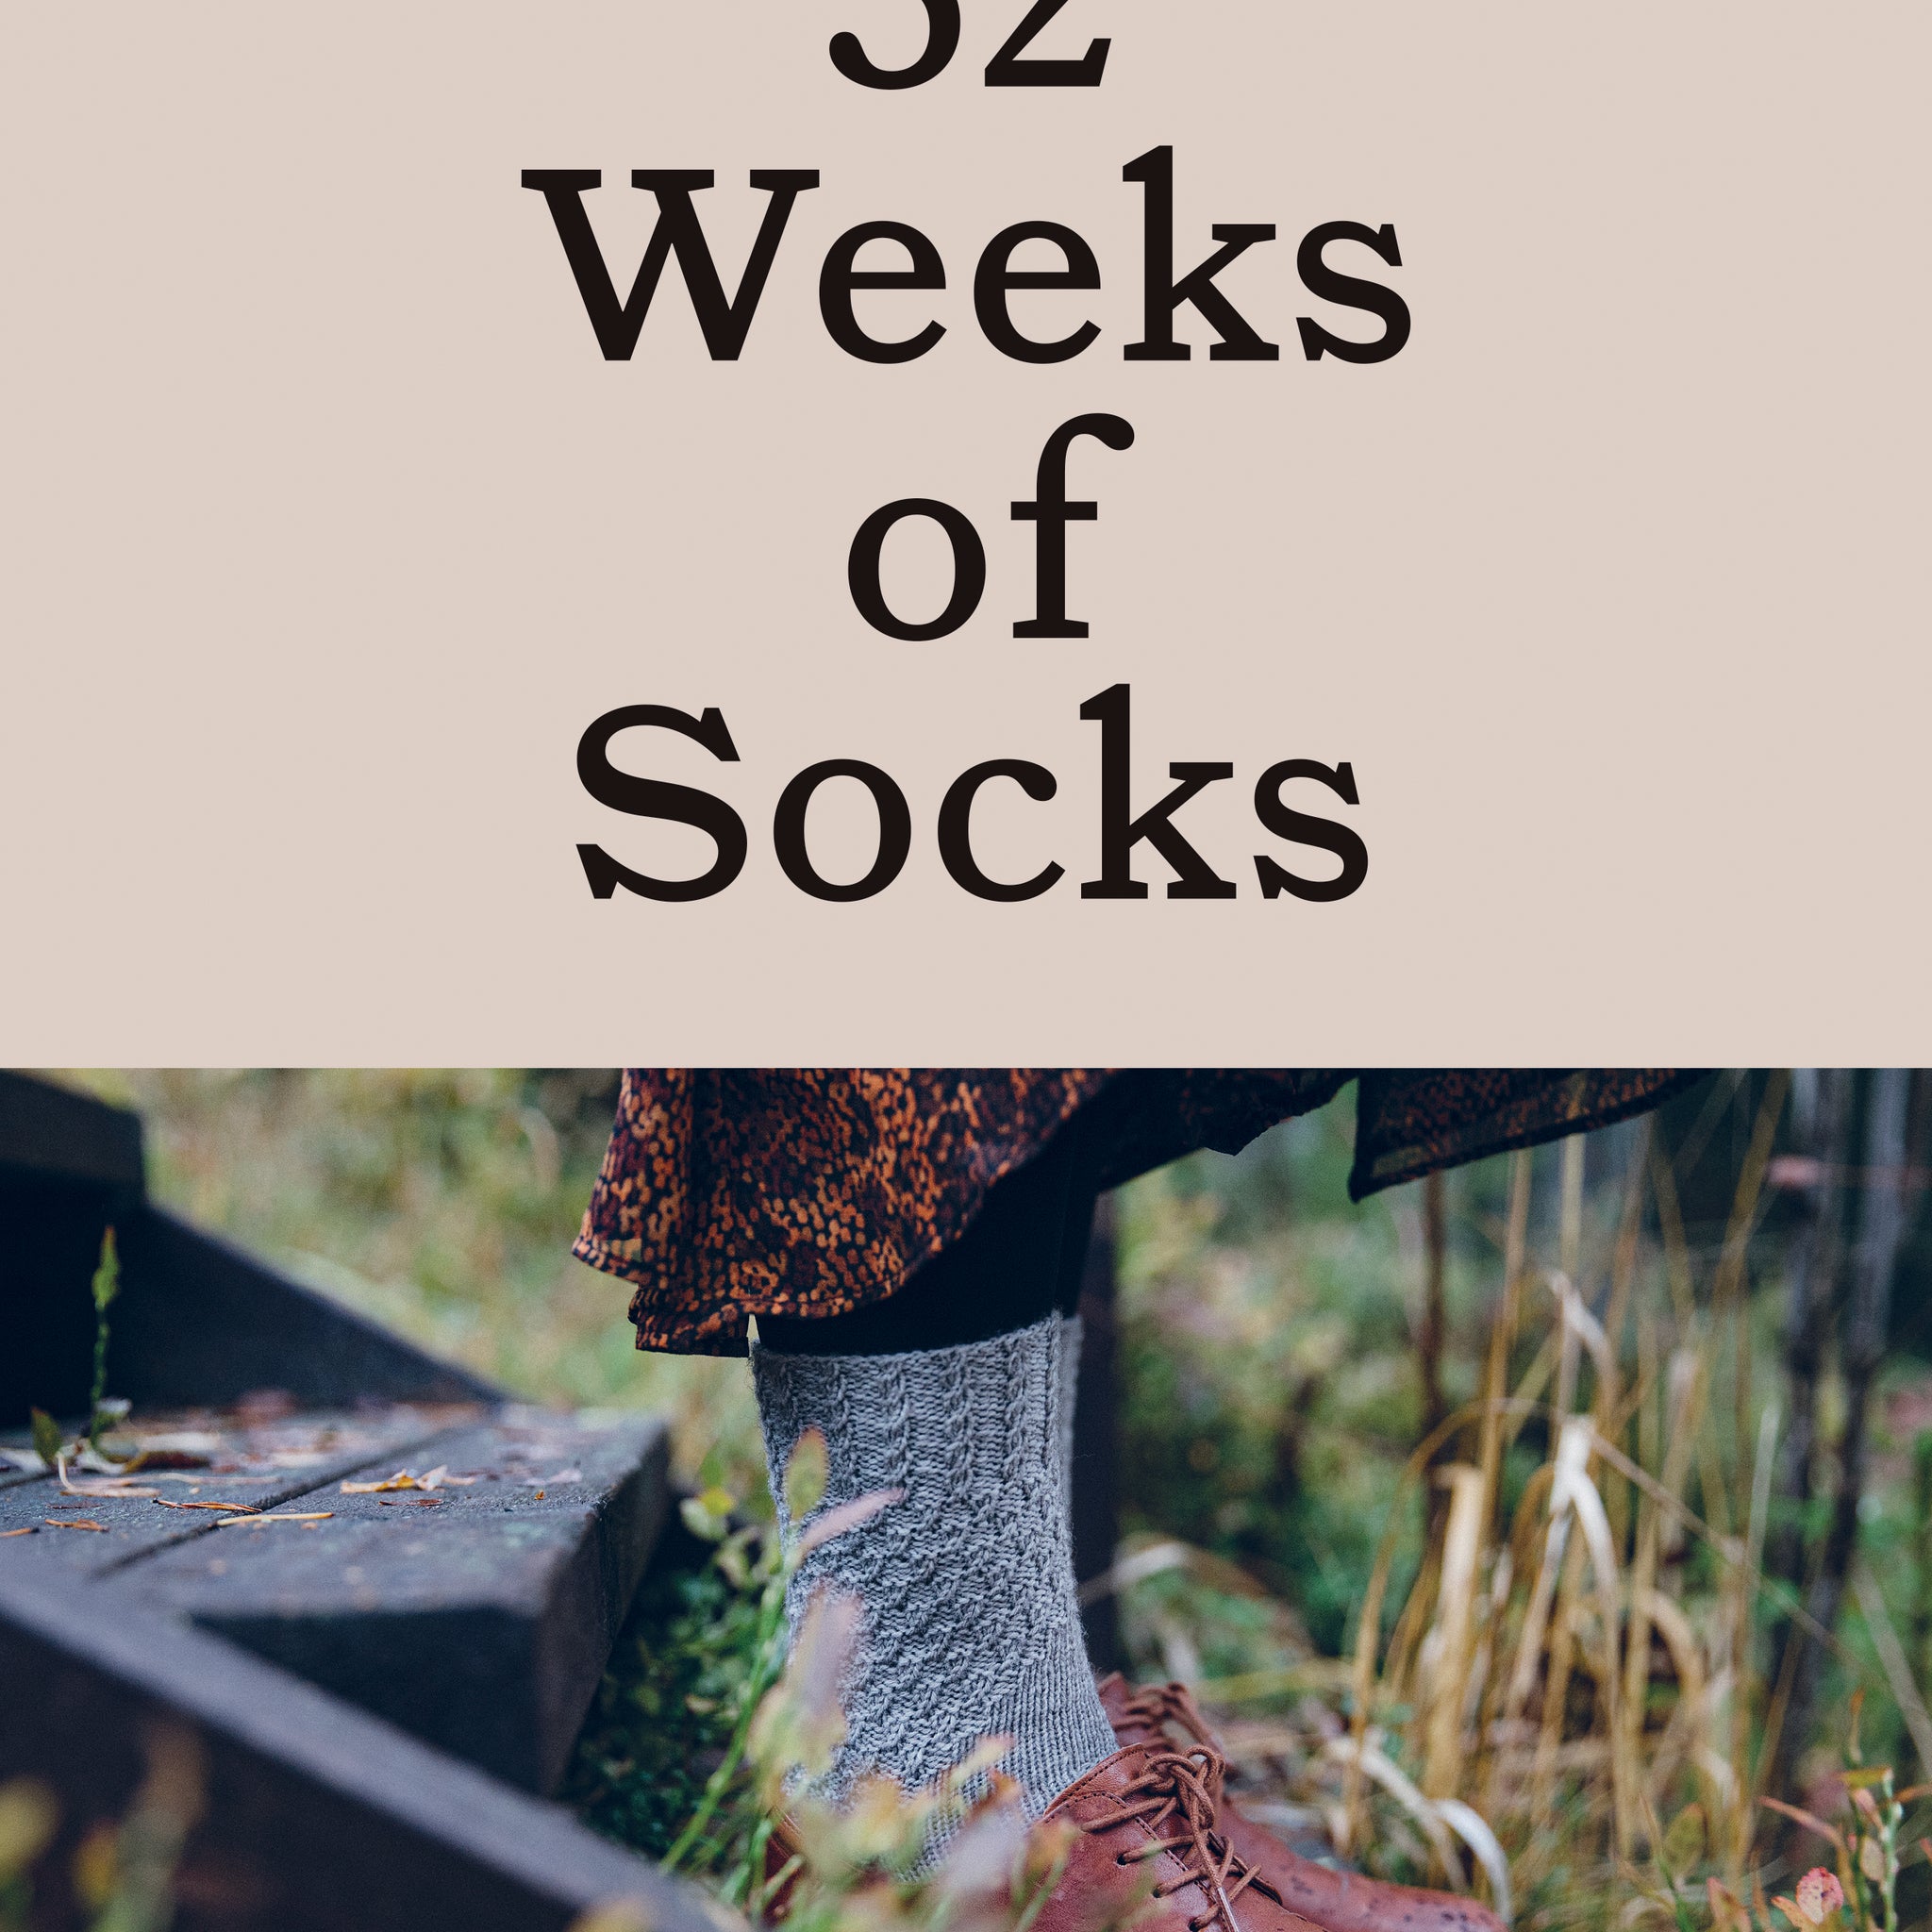 52 weeks of Socks